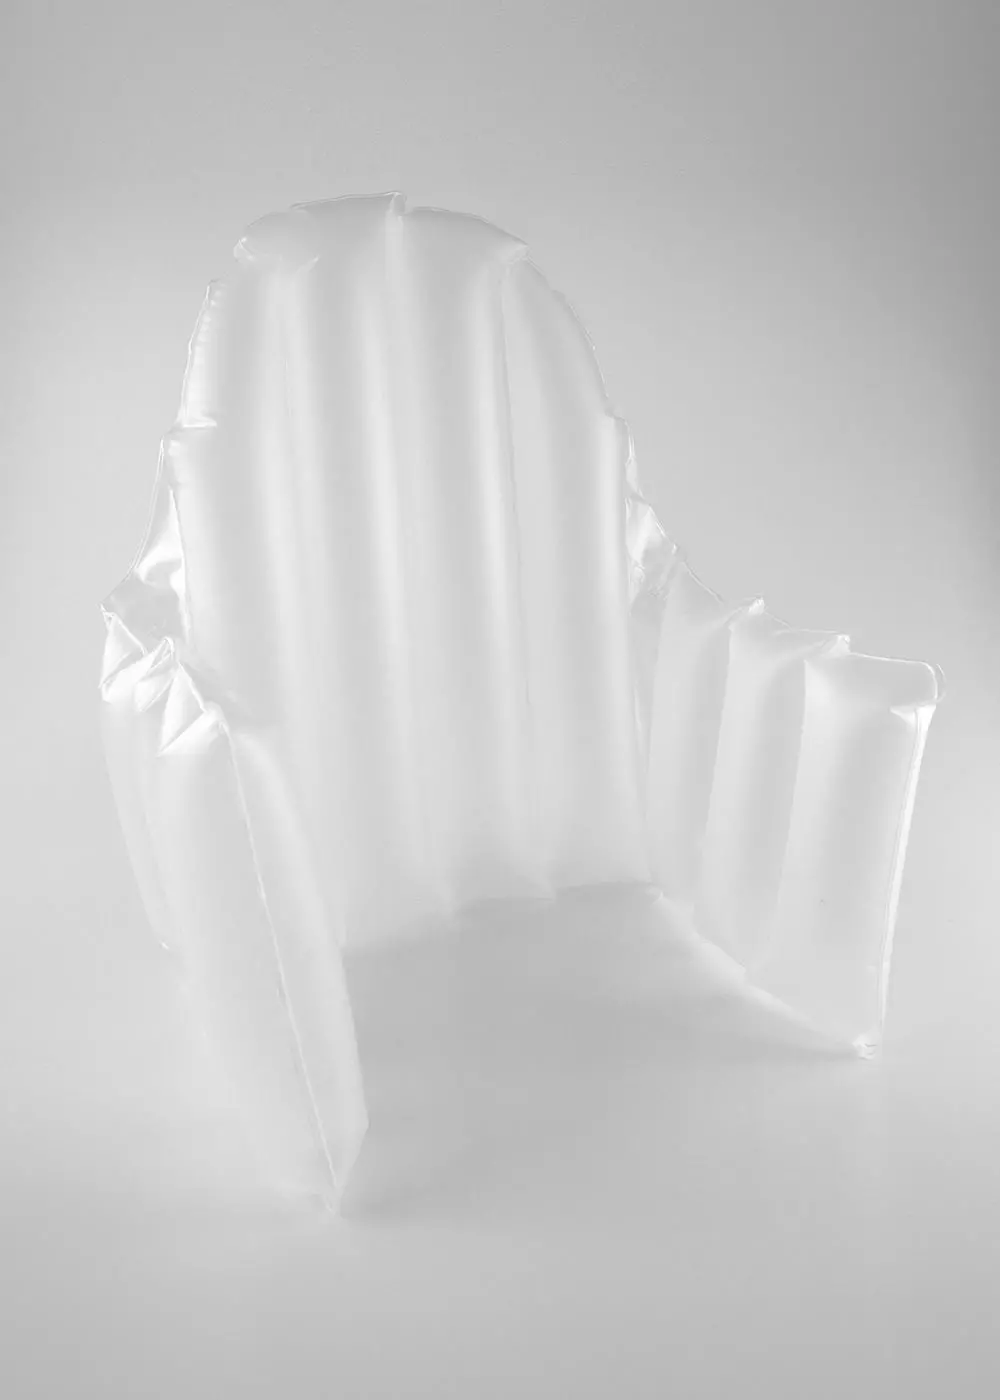 ANTILOP Chaise haute avec plateau, blanc/gris argent - IKEA CA